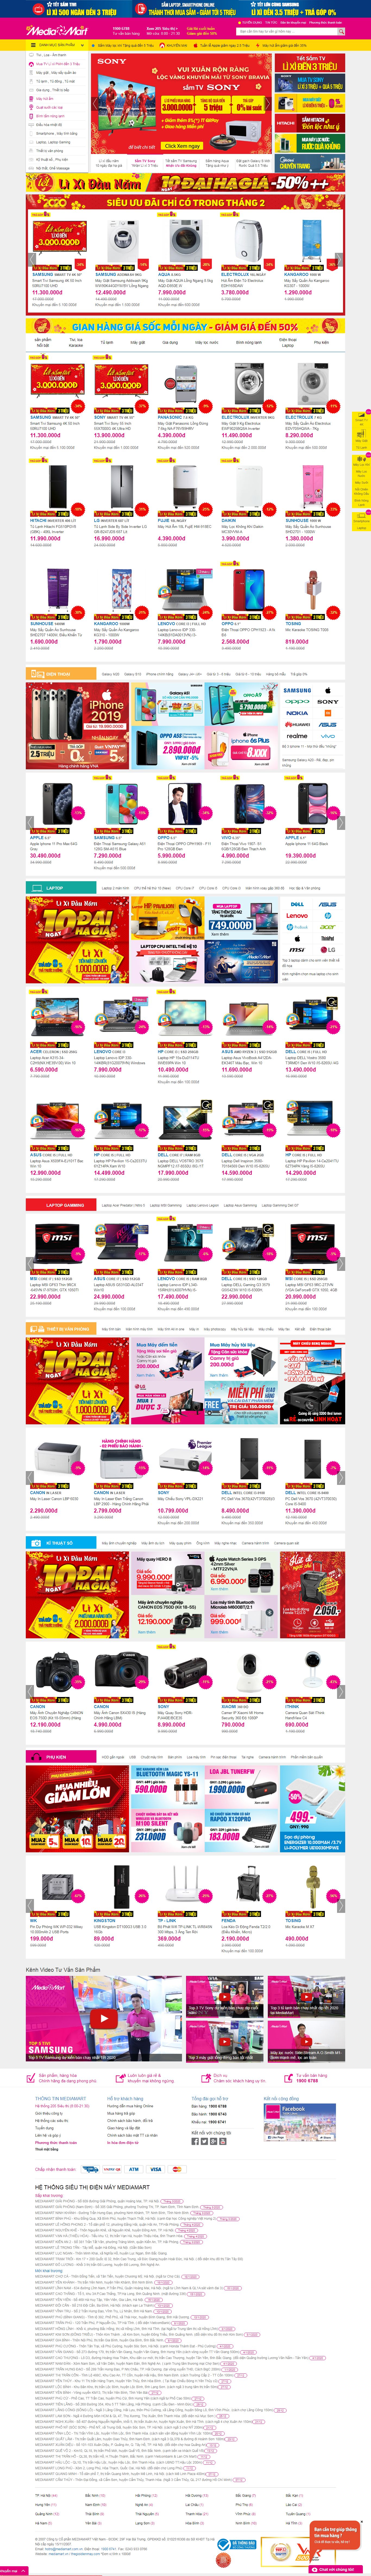 Thiết kế Website siêu thị điện máy - mediamart.vn